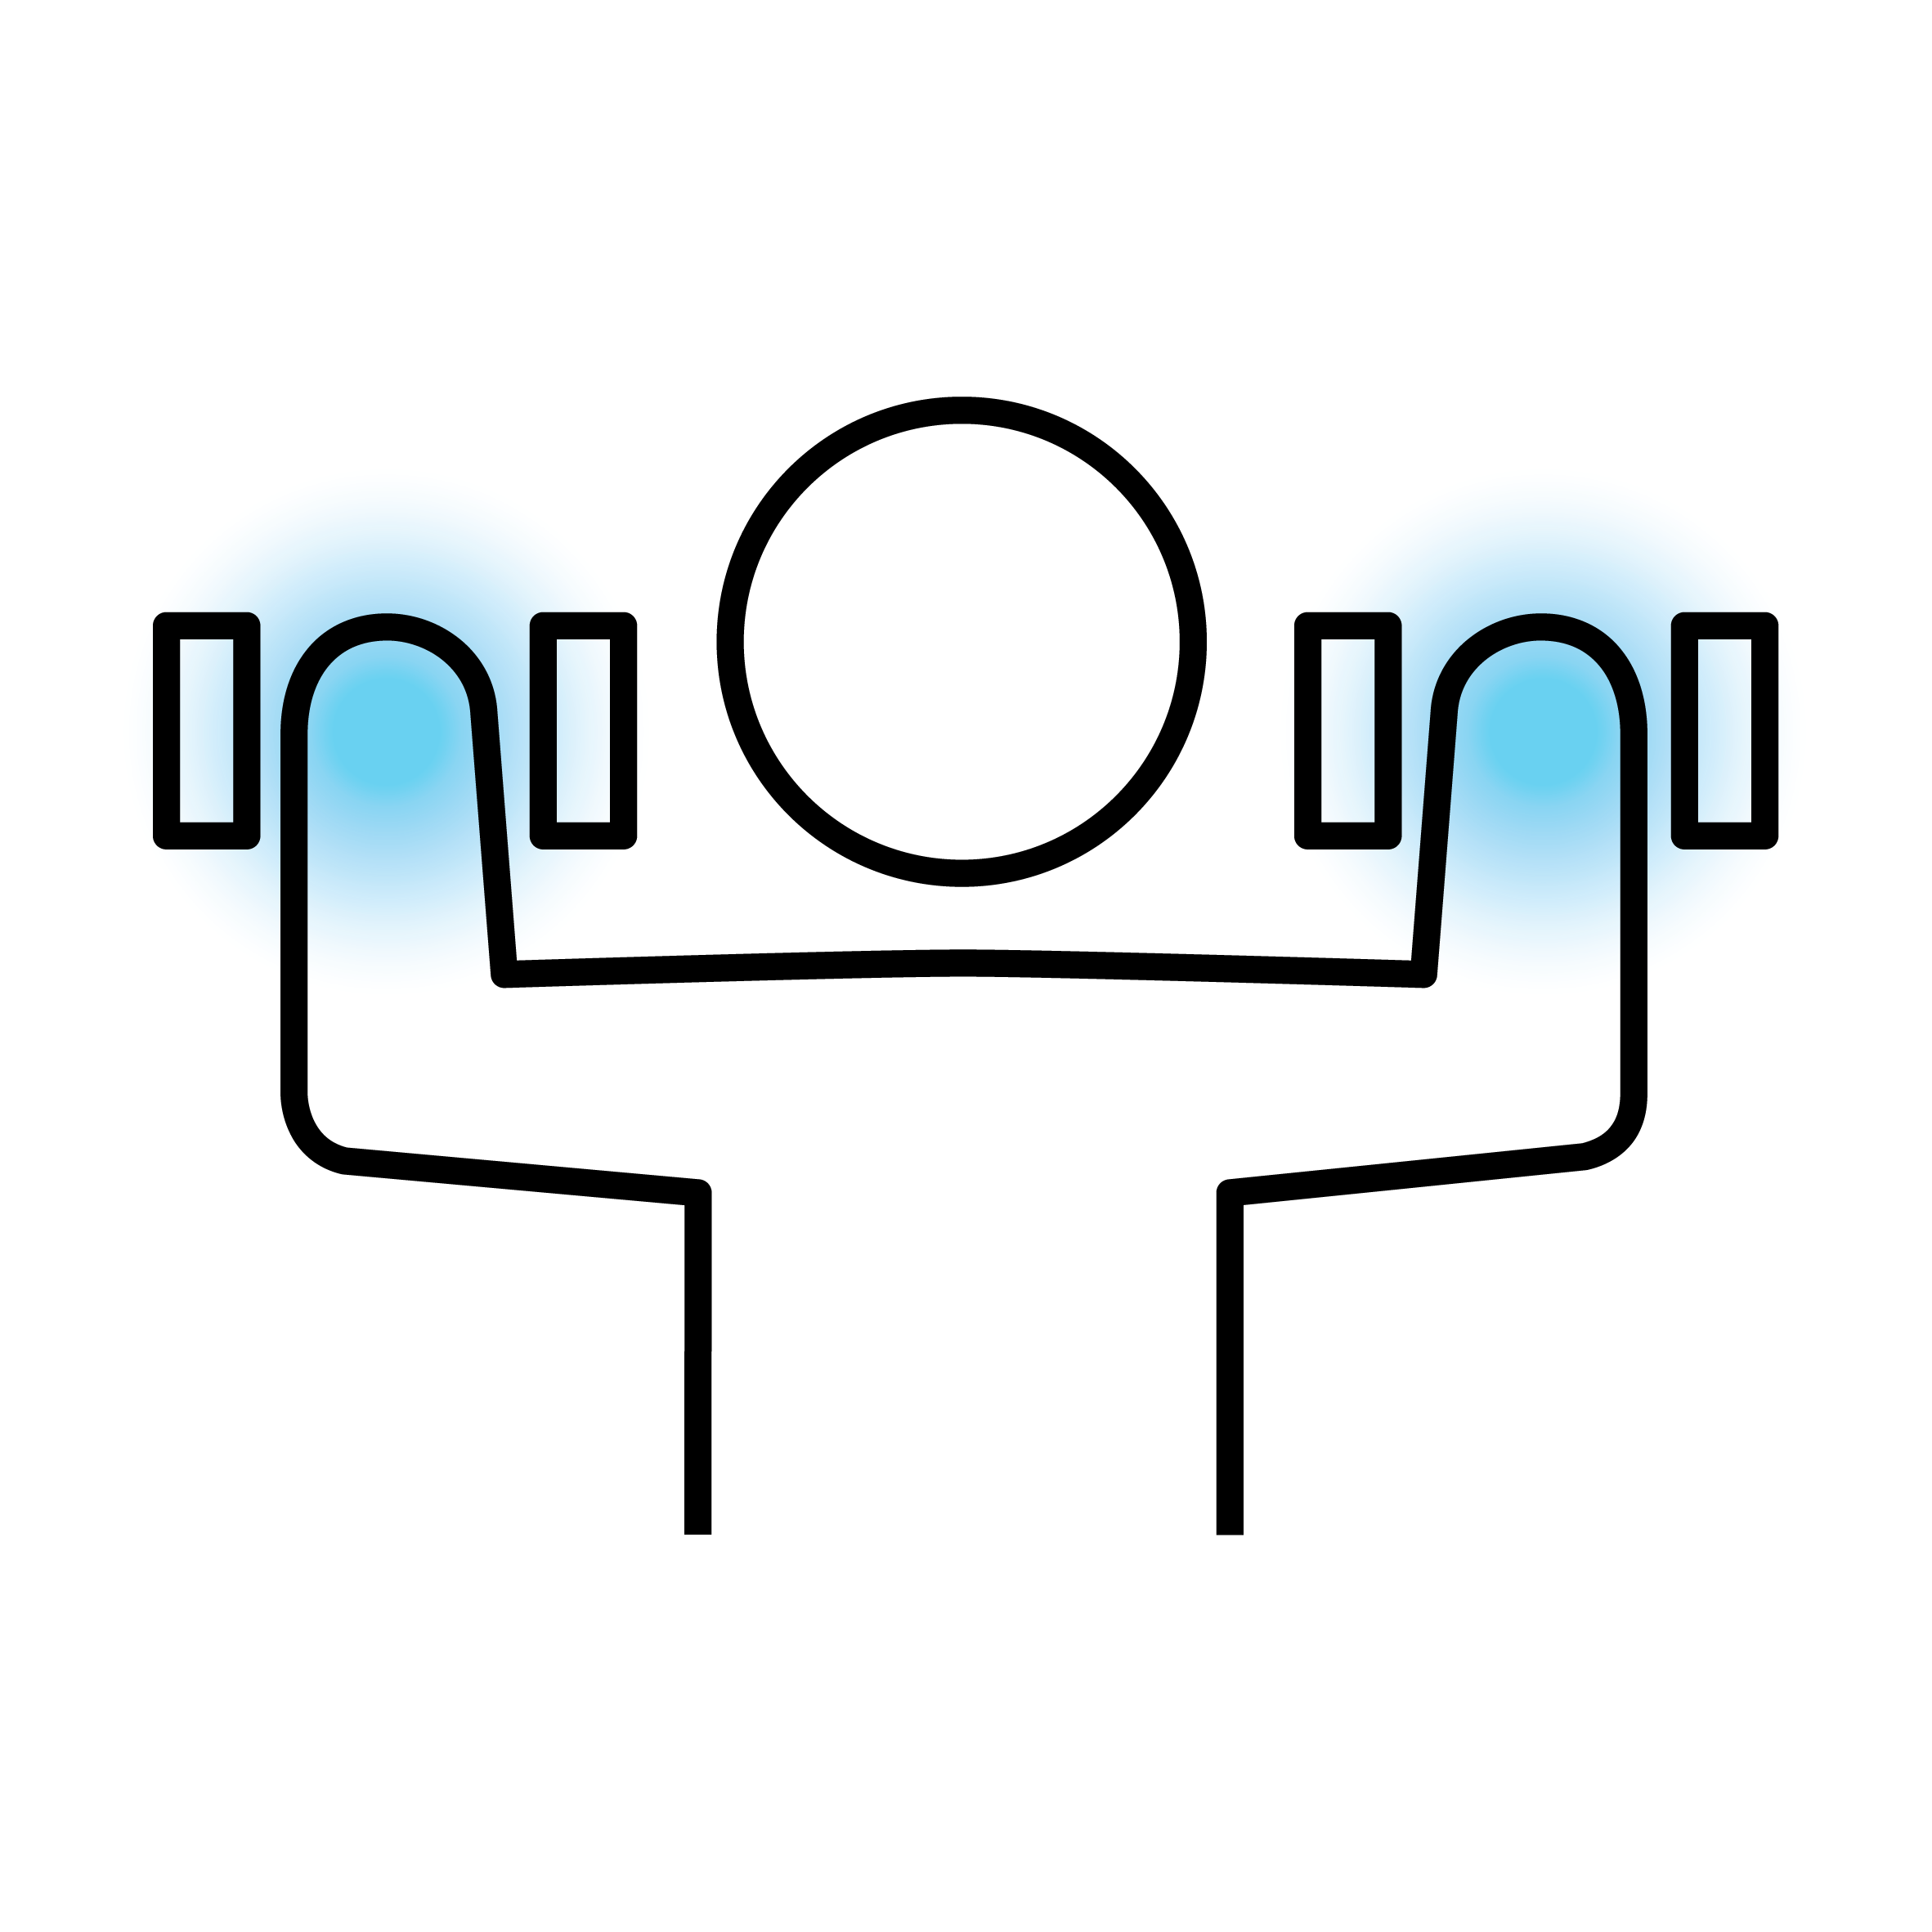 Stilisiertes Icon eines Menschen, der mit Hanteln Gewichtheben betreibt.